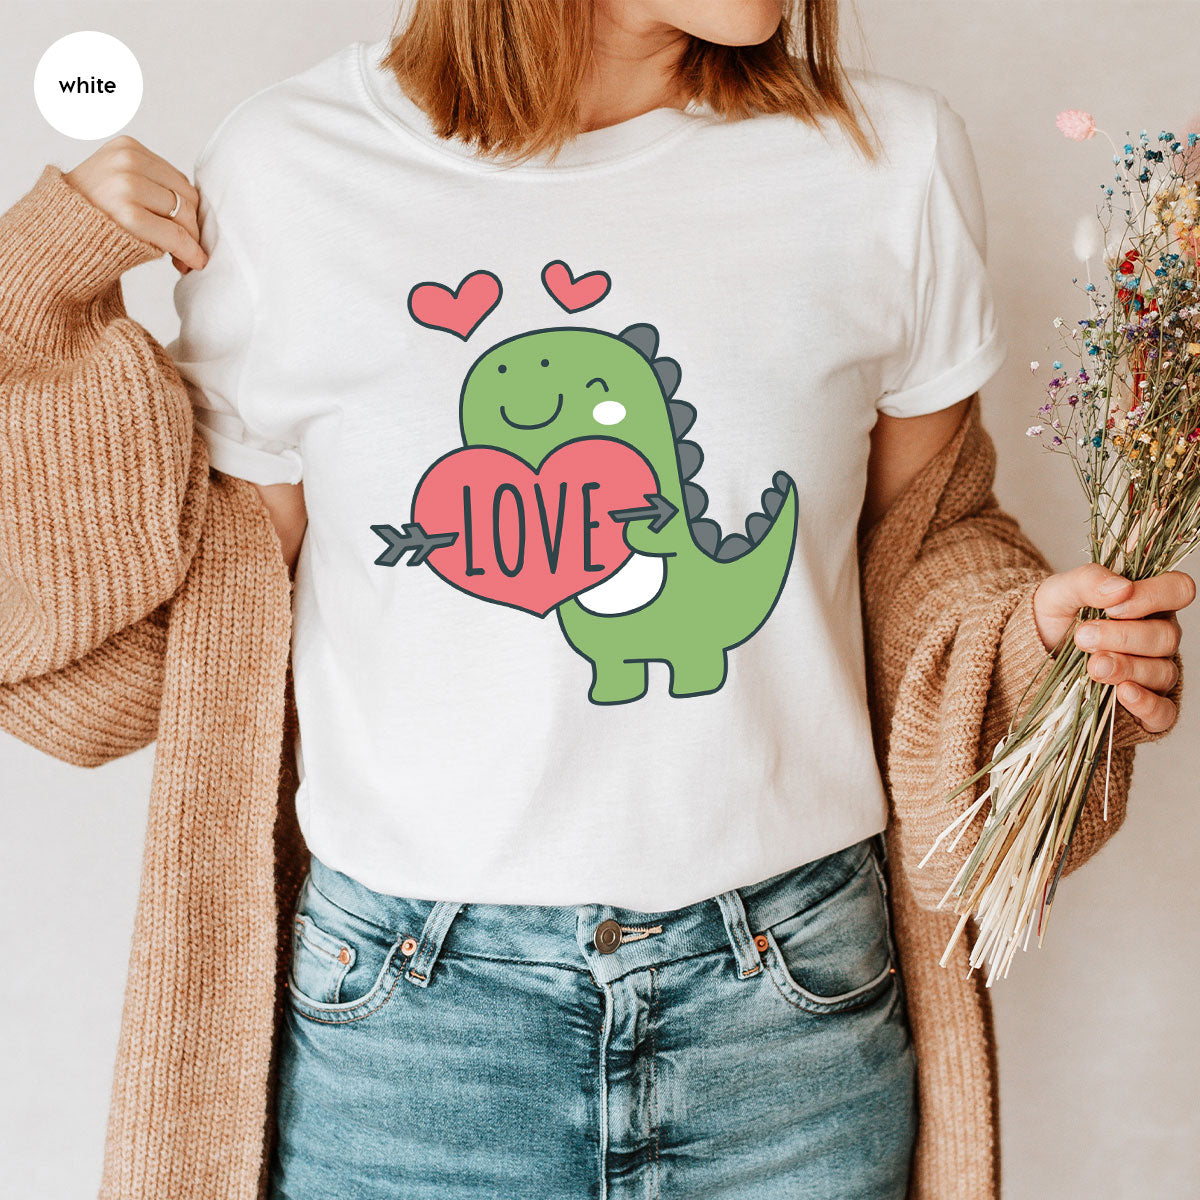 Love Shirt, Lovely Dinosaur Shirt, Valentine's Day Special Shirt, Valentine's Day Shirt For Women